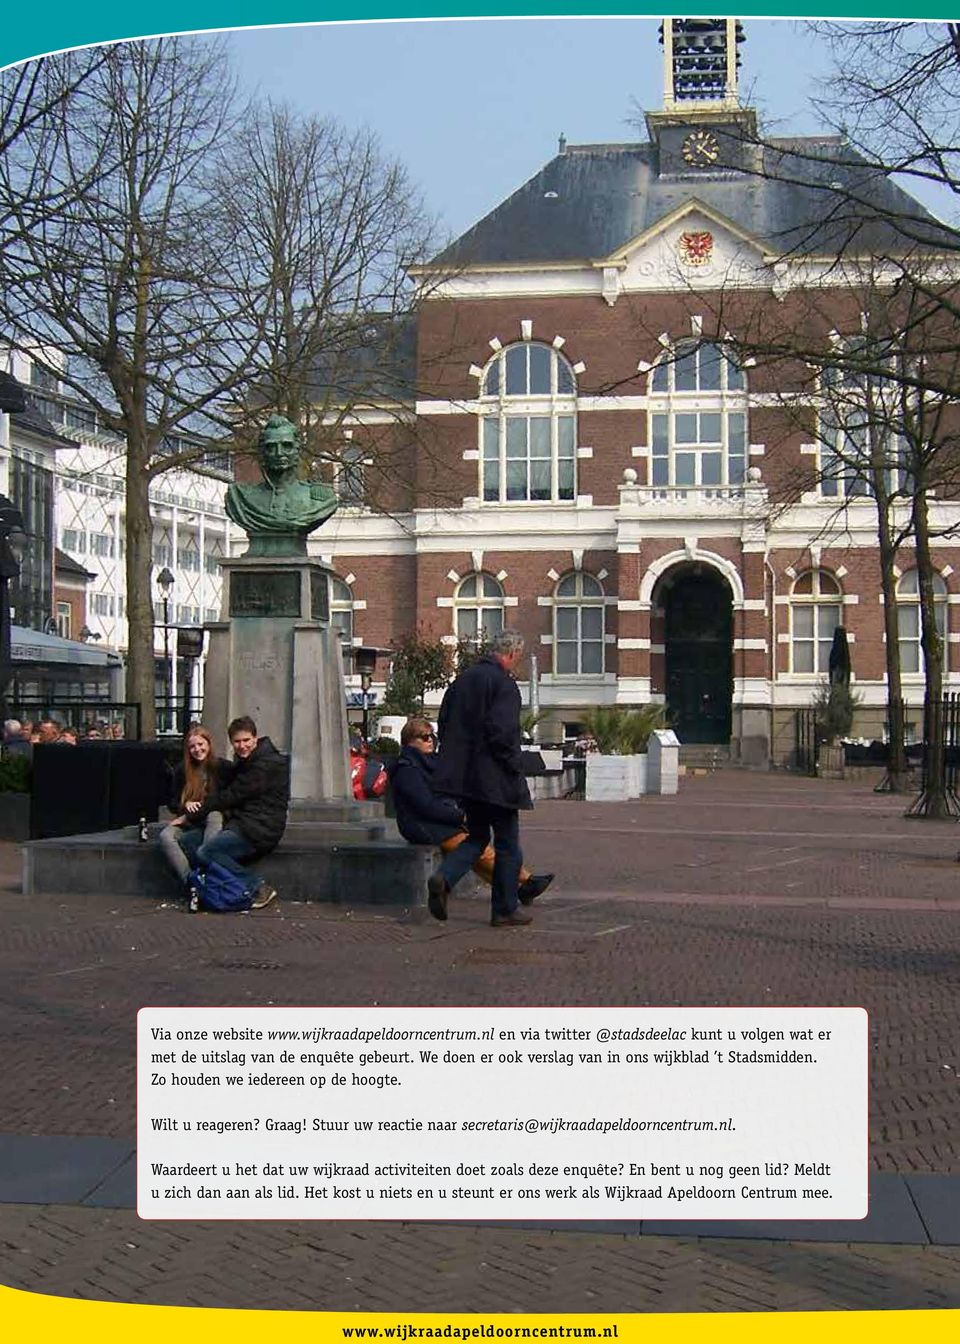 Stuur uw reactie naar secretaris@wijkraadapeldoorncentrum.nl. Waardeert u het dat uw wijkraad activiteiten doet zoals deze enquête?